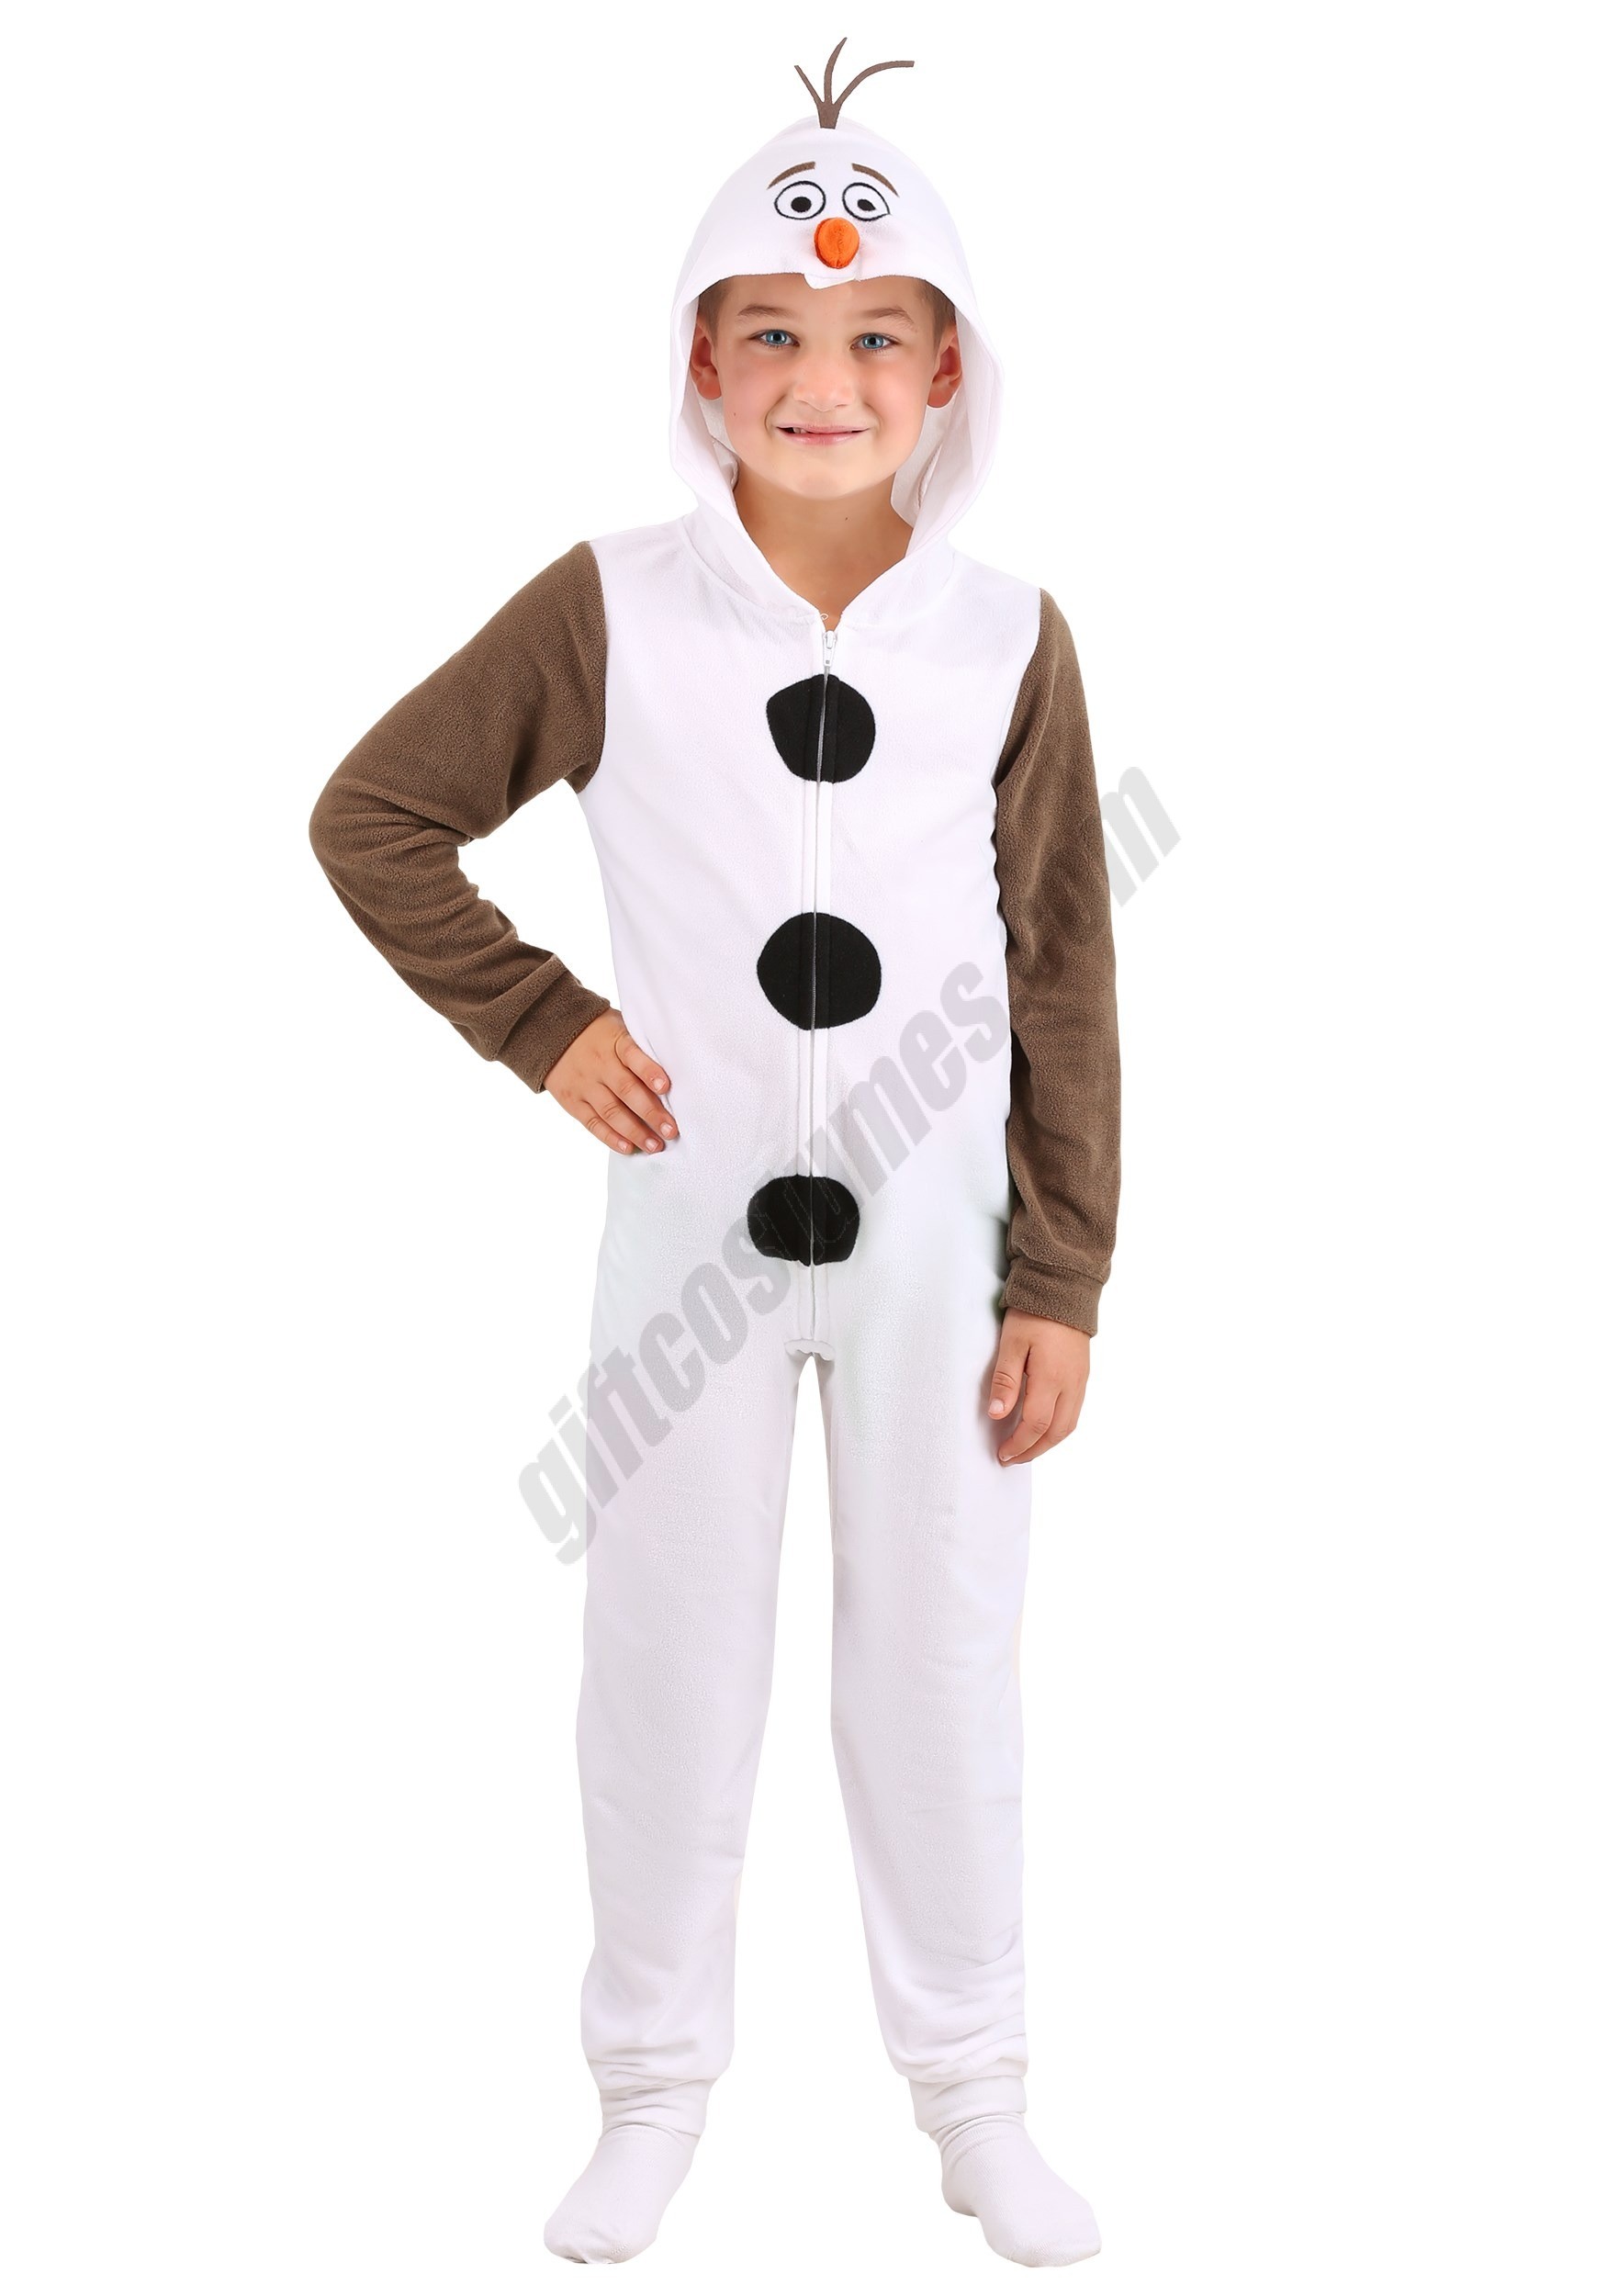 Frozen Boys Olaf Union Suit Promotions - Frozen Boys Olaf Union Suit Promotions